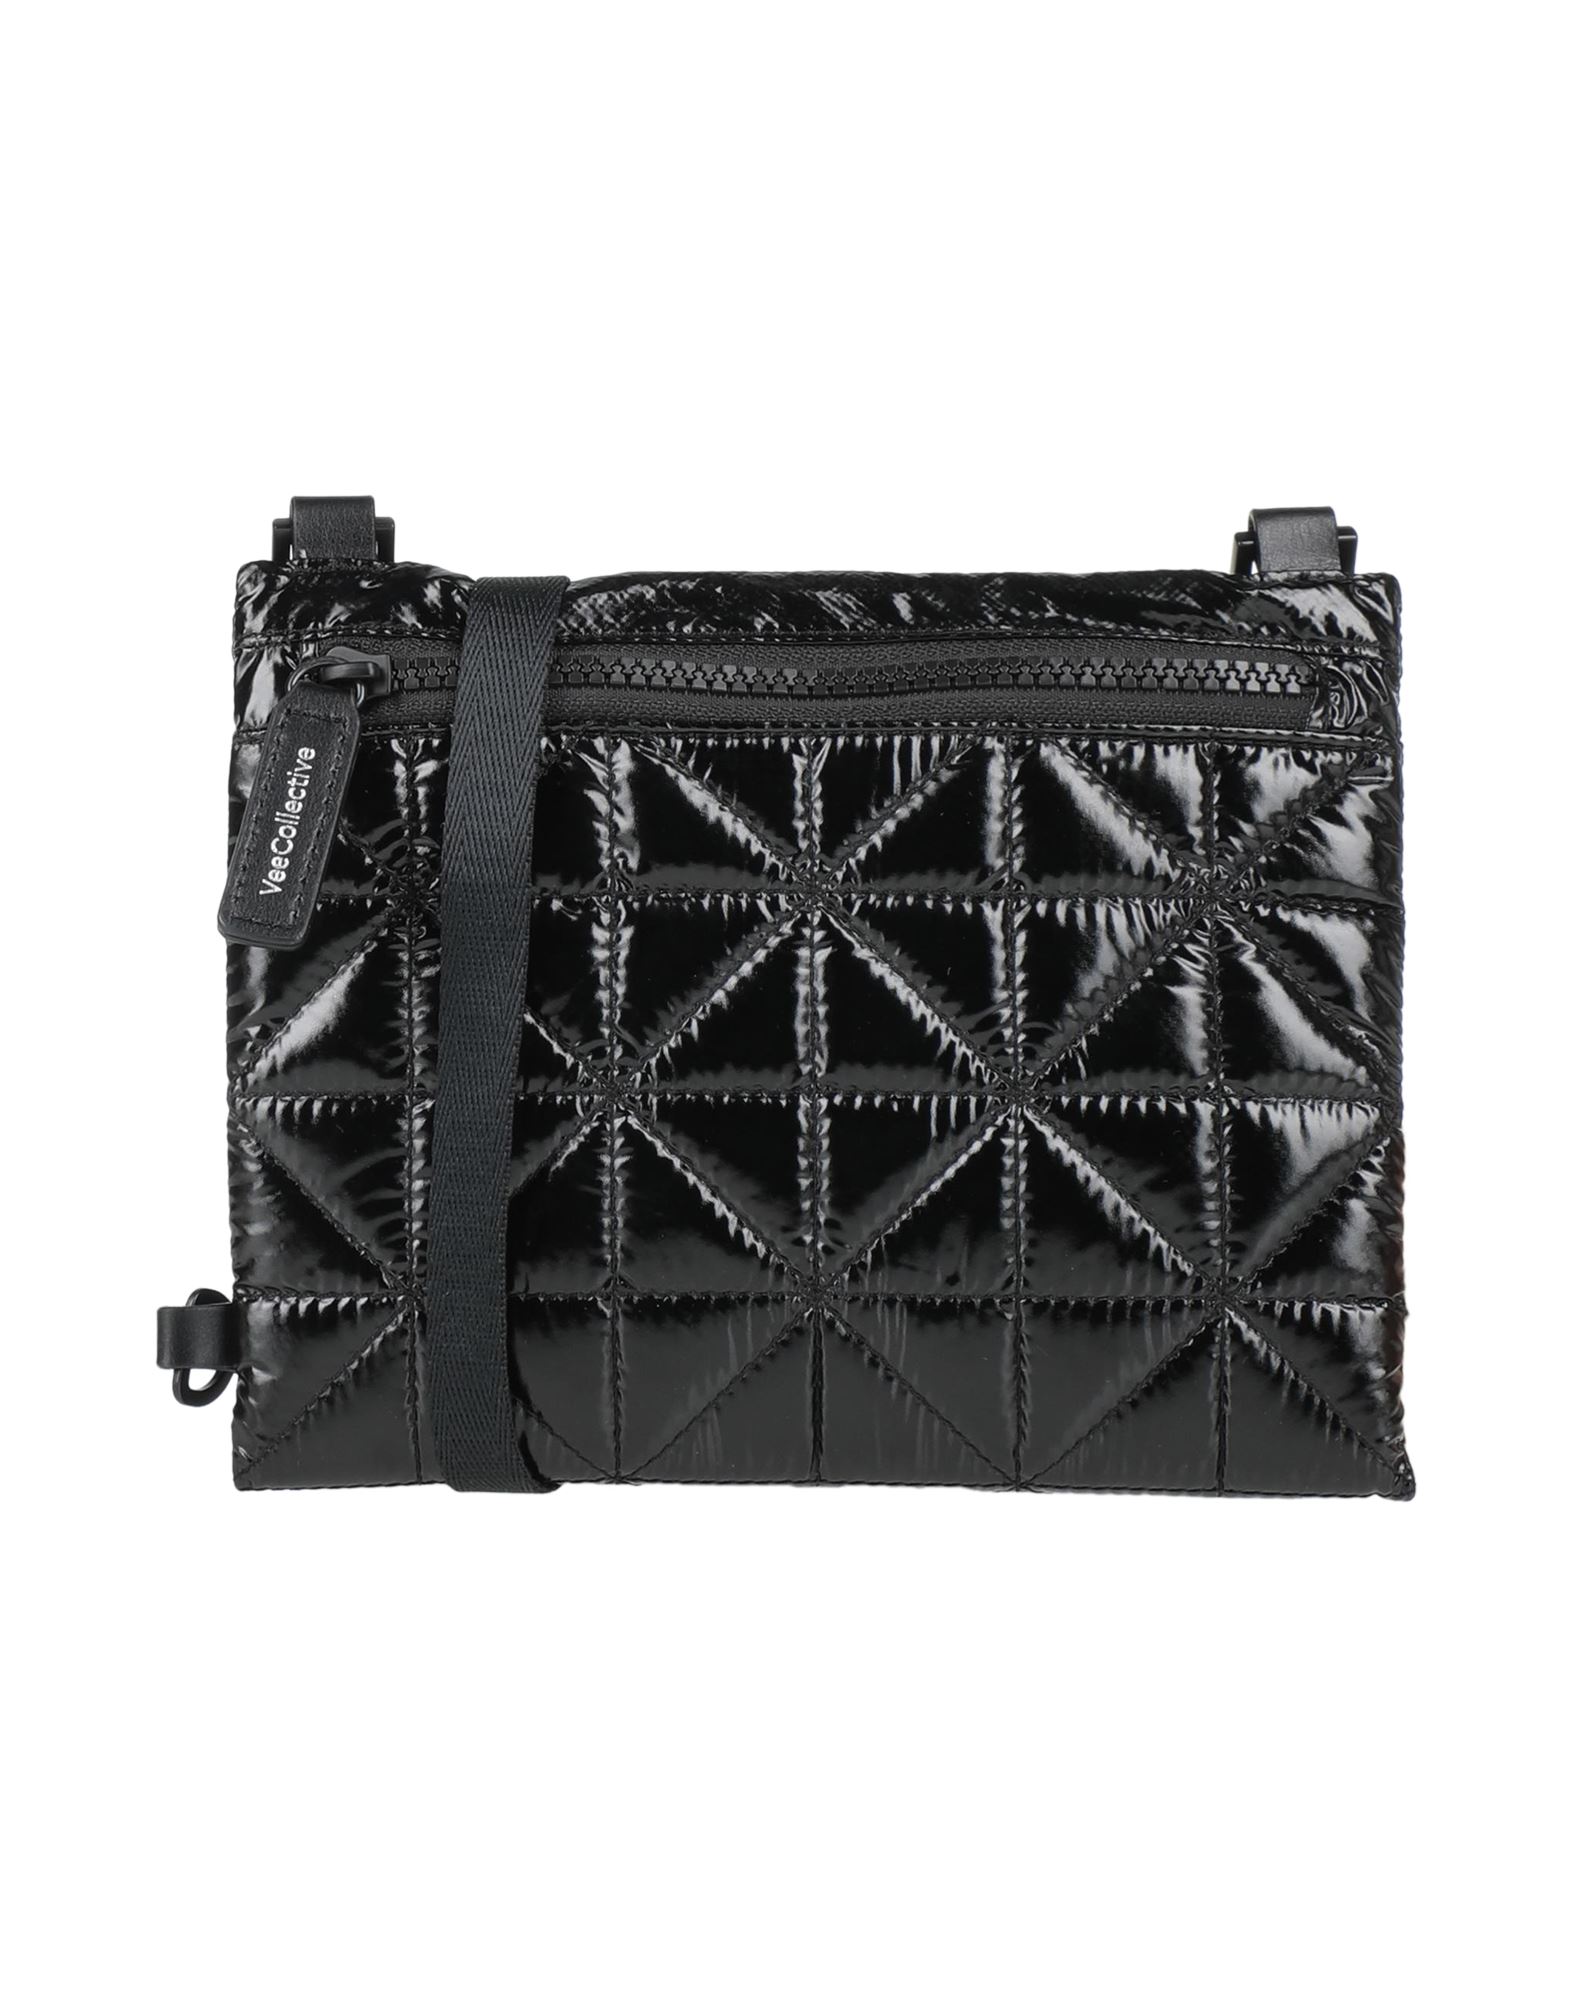 Veecollective Handbags In Black